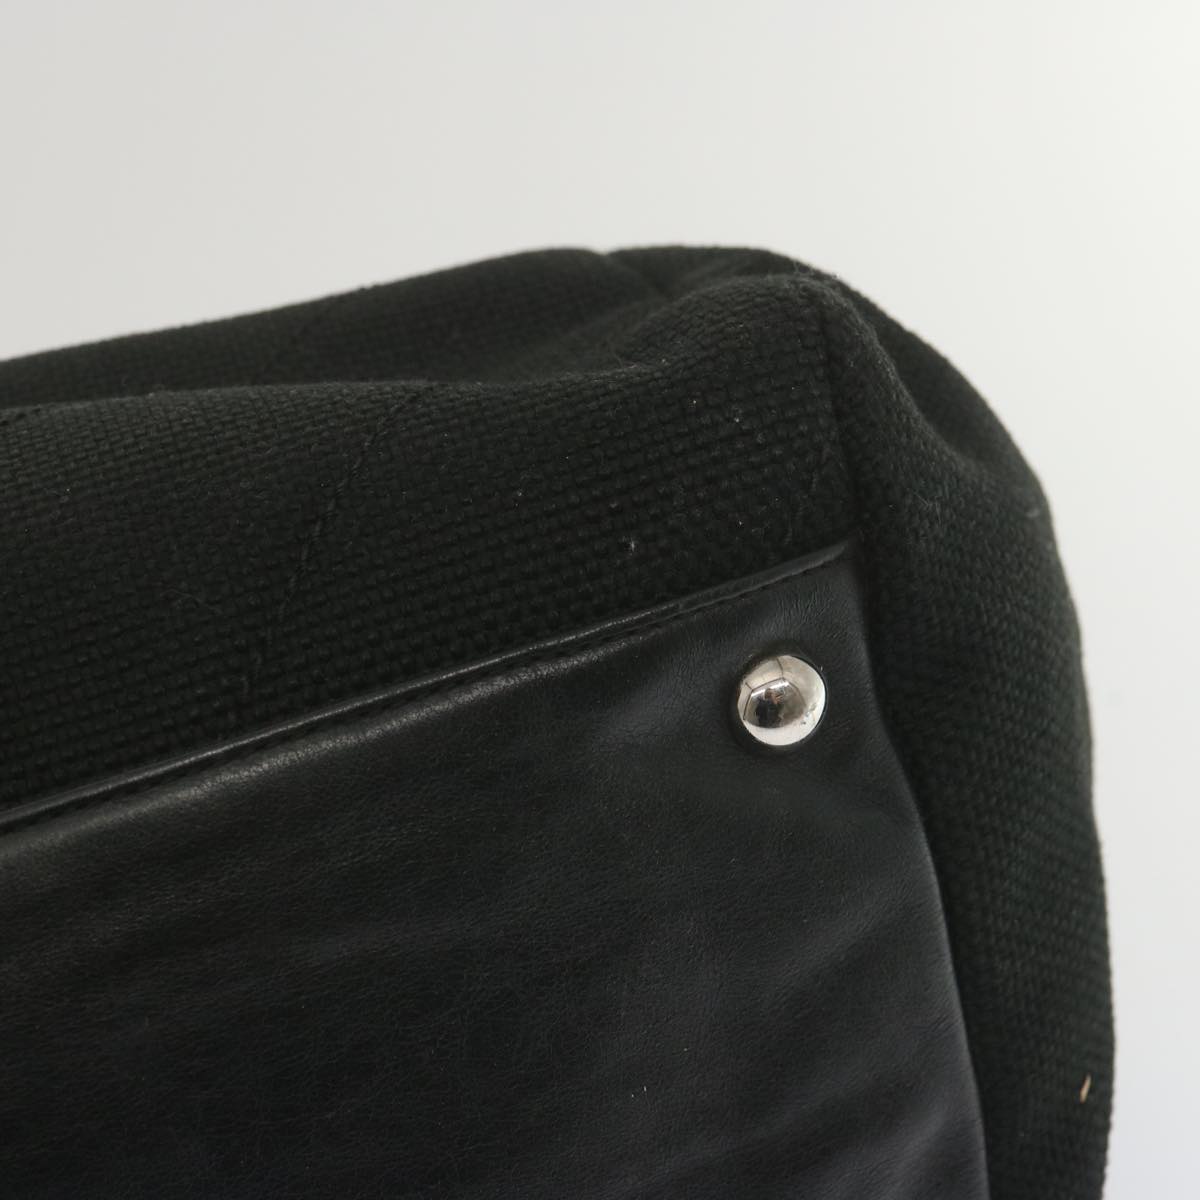 CHANEL Chain Shoulder Bag Canvas Black CC Auth bs12558